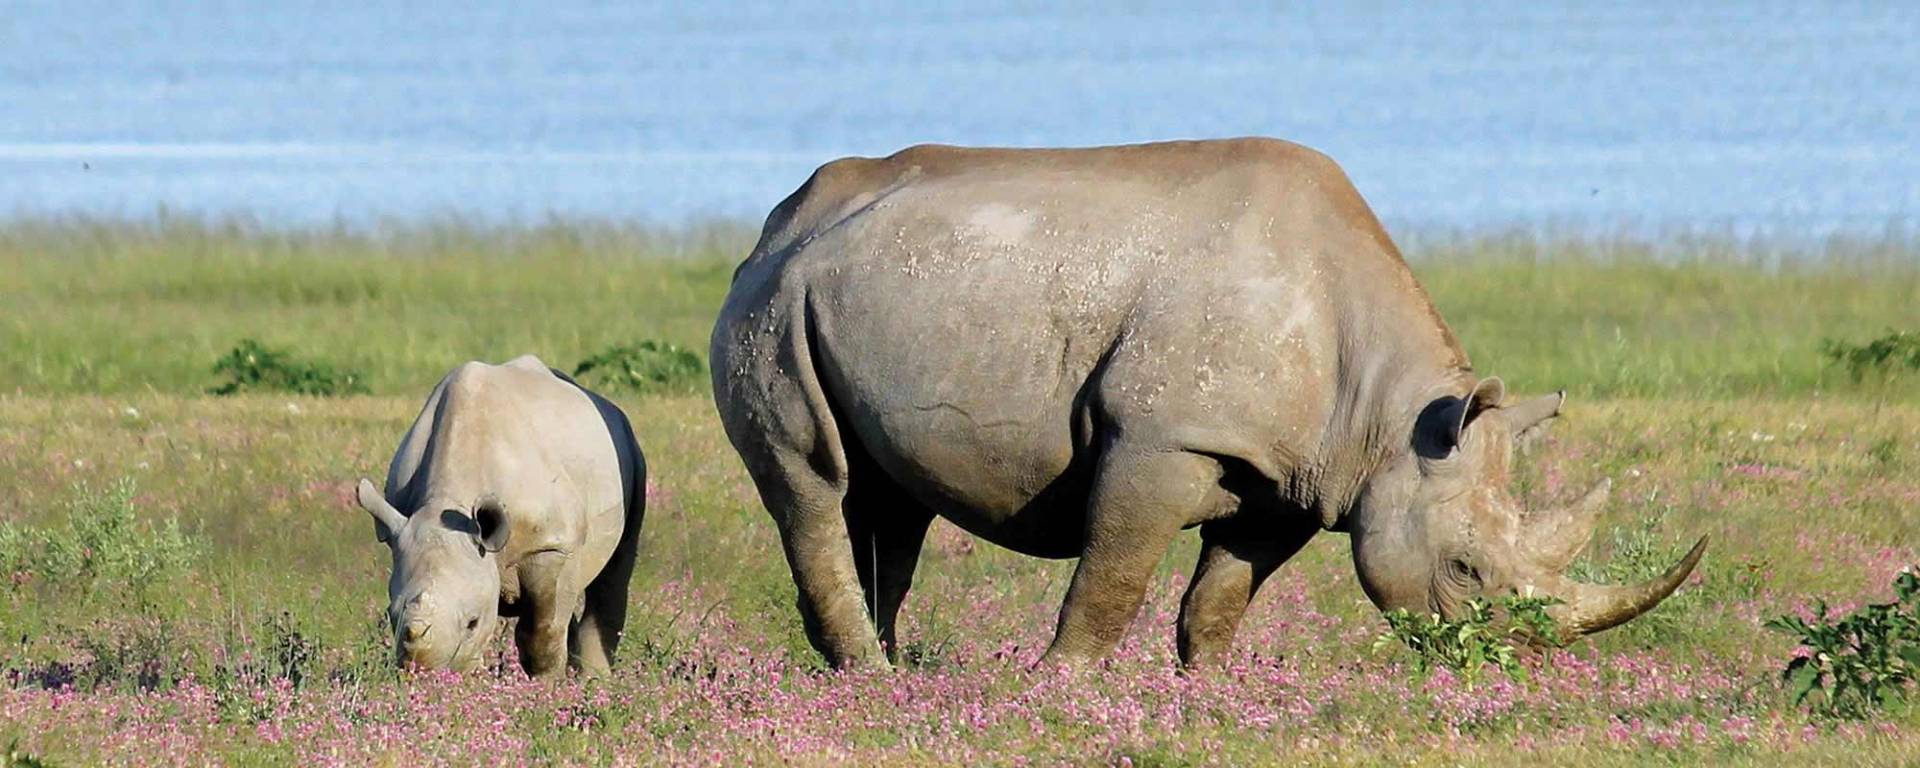 Rhino Conservation Project at Kuzikus